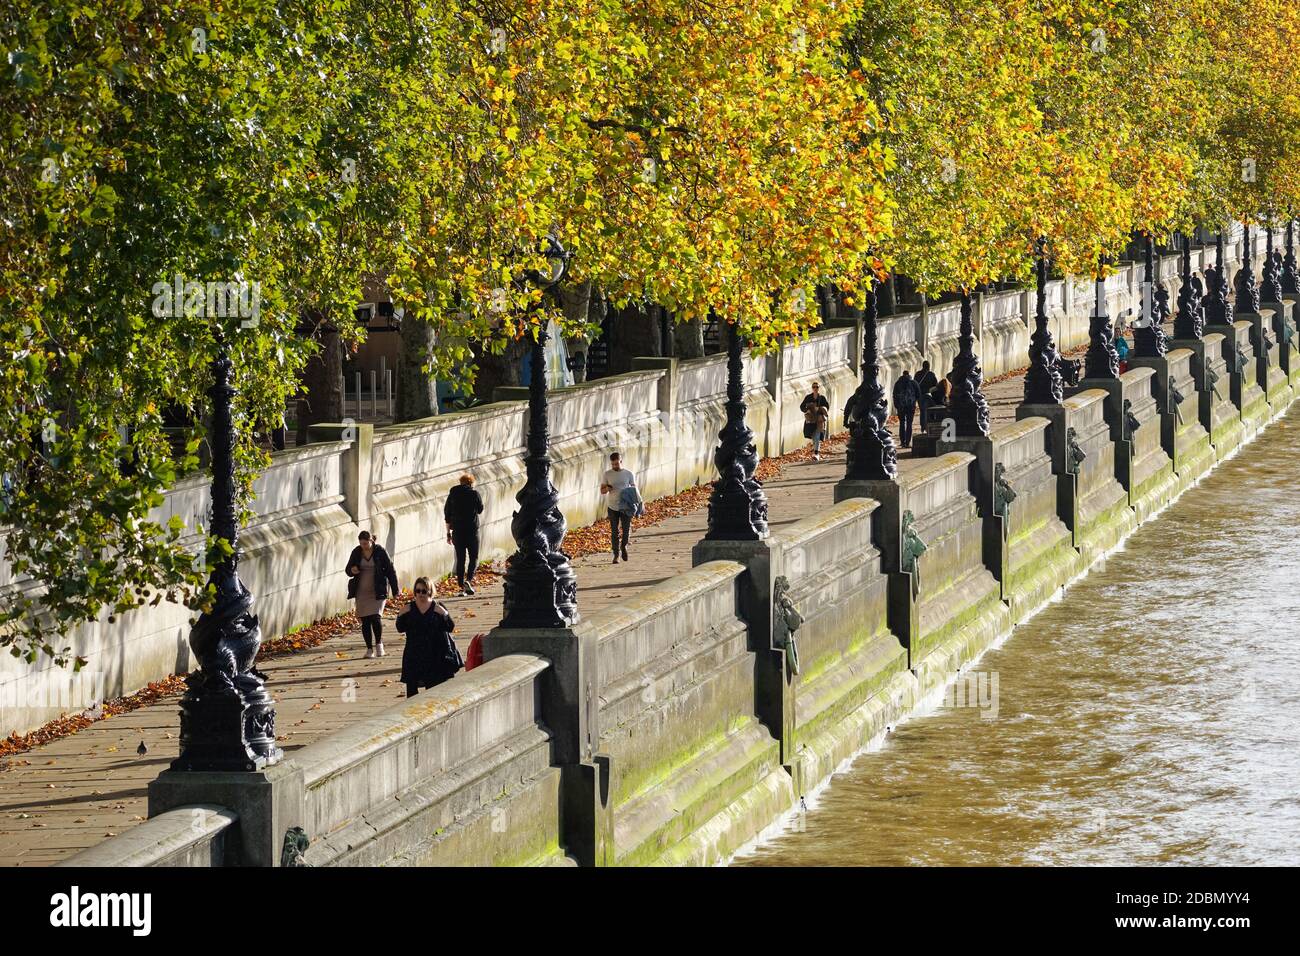 Menschen zu Fuß auf dem Albert Embankment Pfad, London England Vereinigtes Königreich Großbritannien Stockfoto